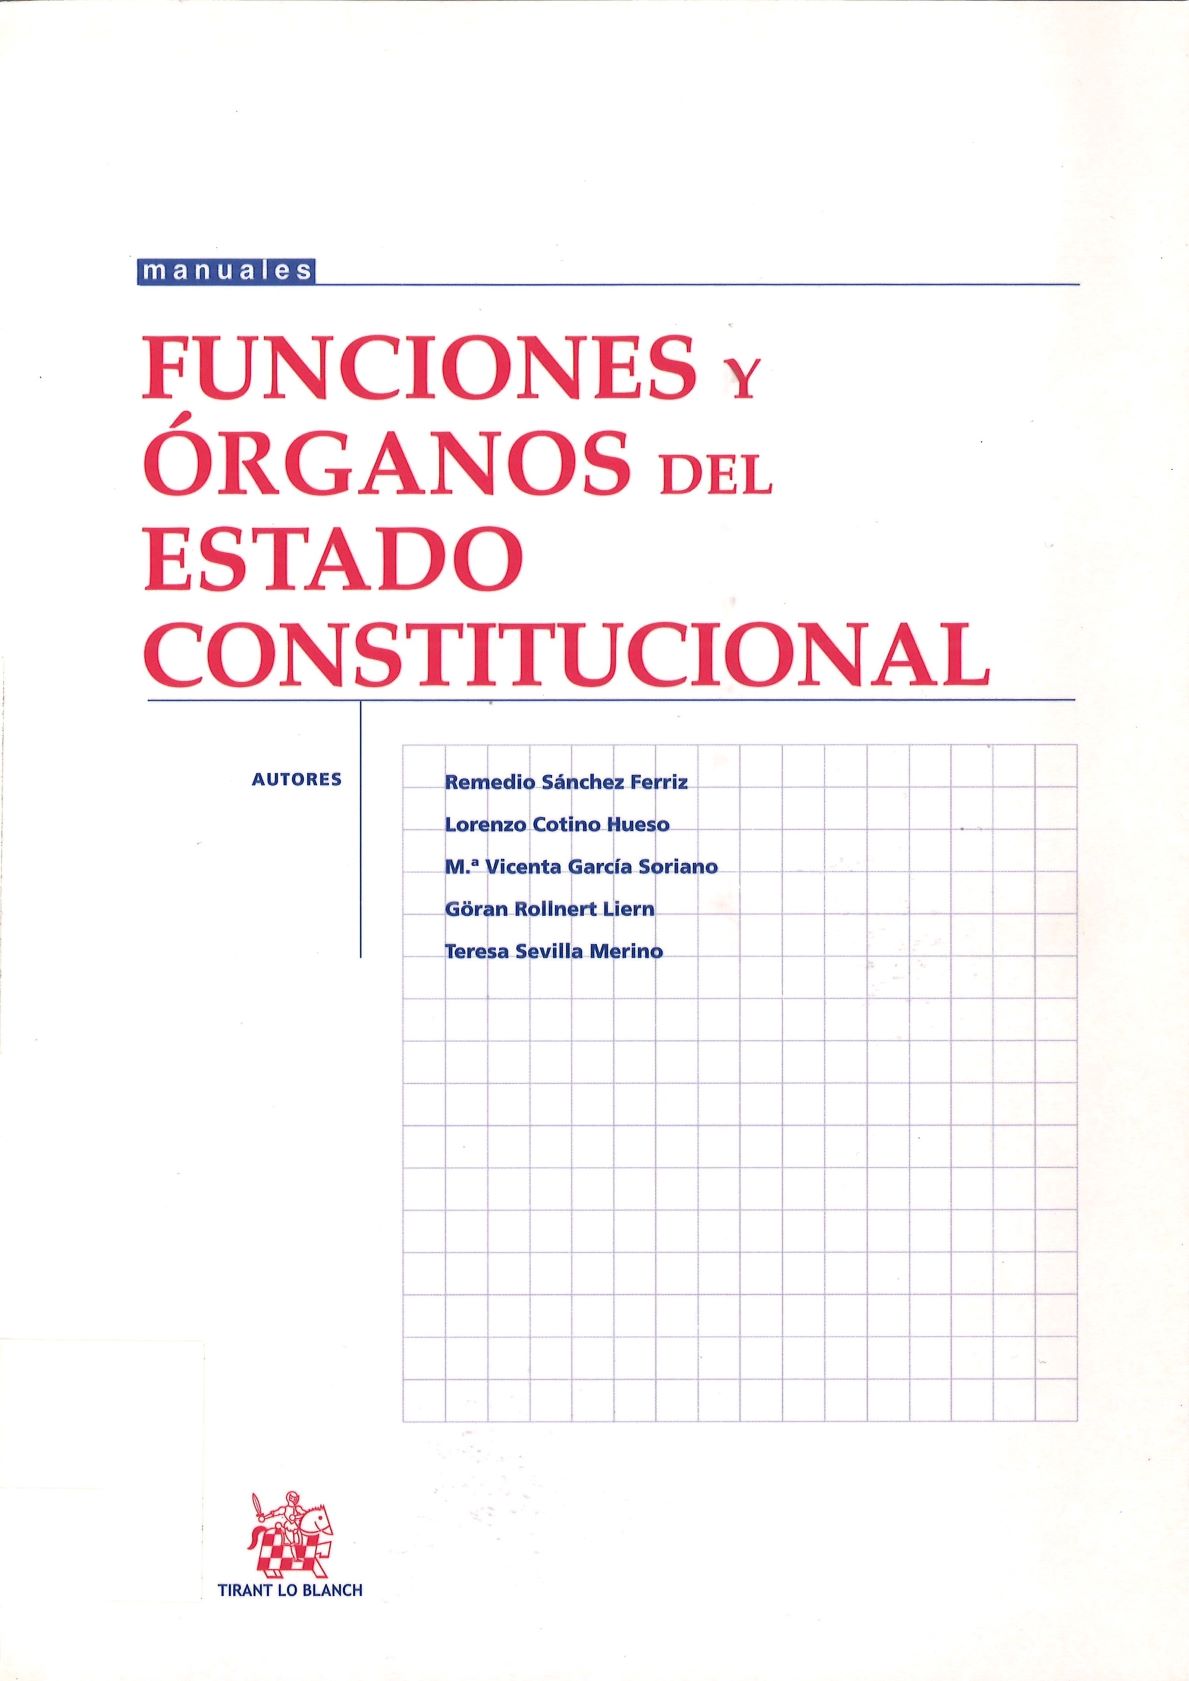 Imagen de portada del libro Funciones y órganos del estado constitucional